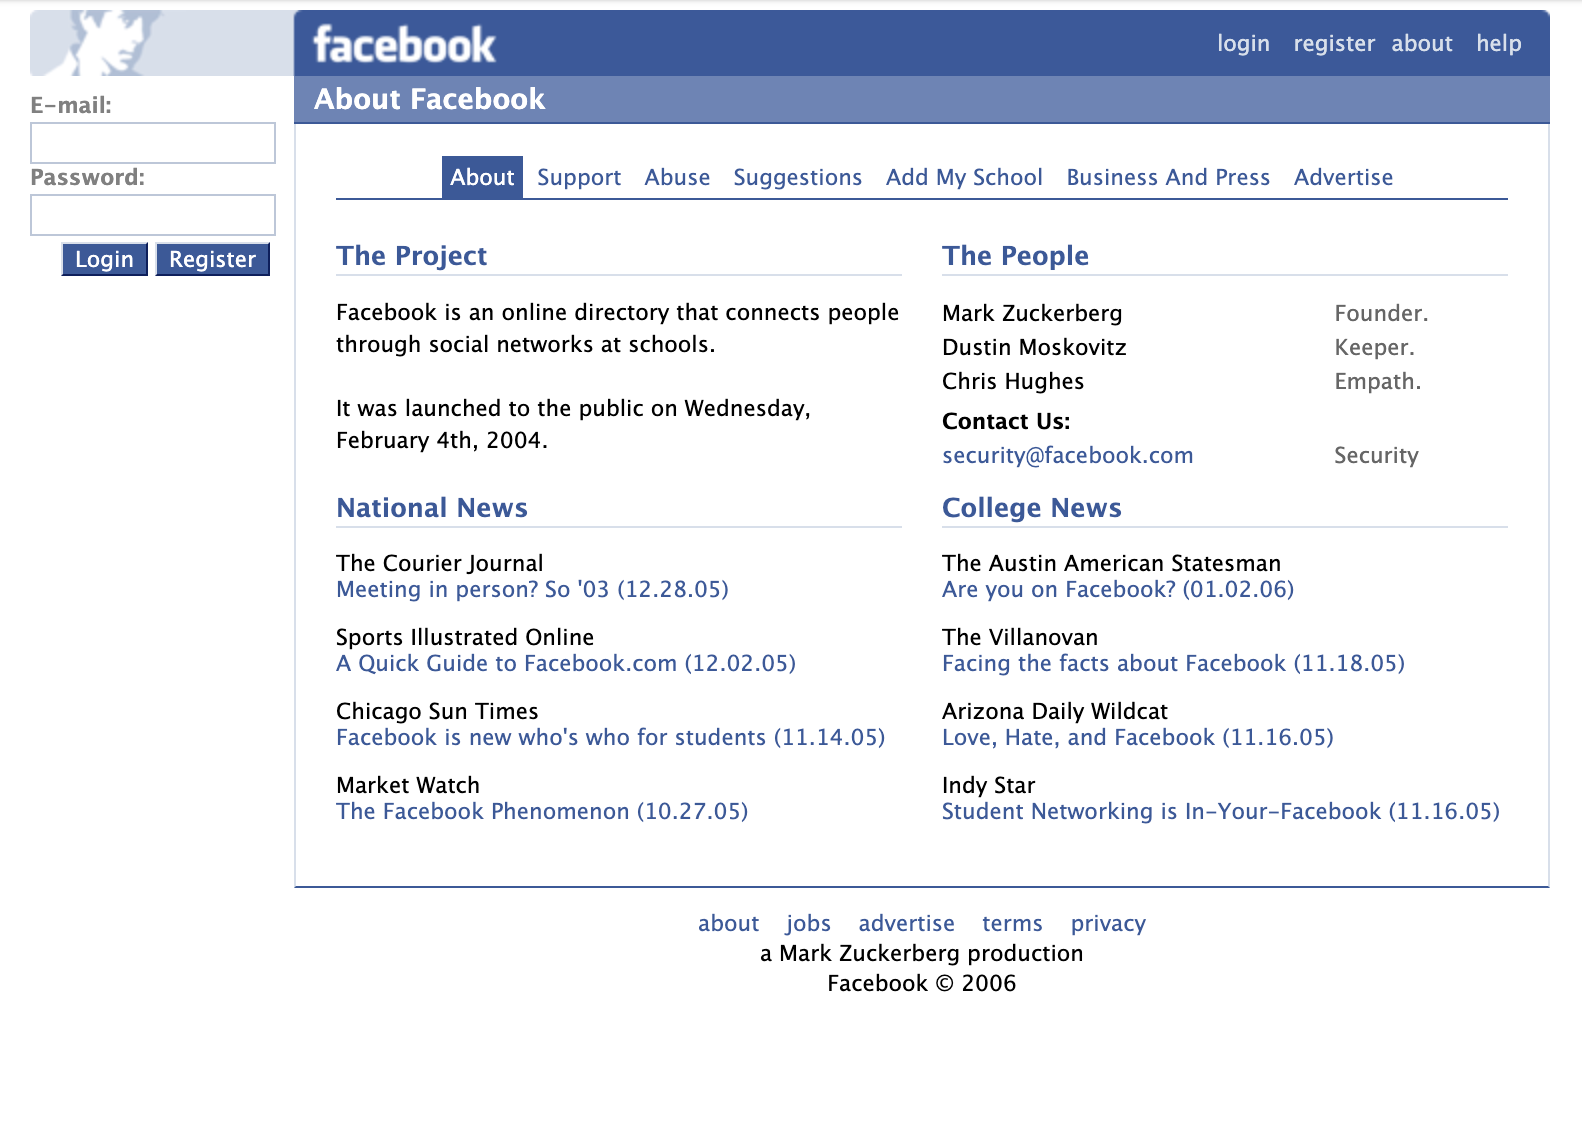 Facebook in 2006